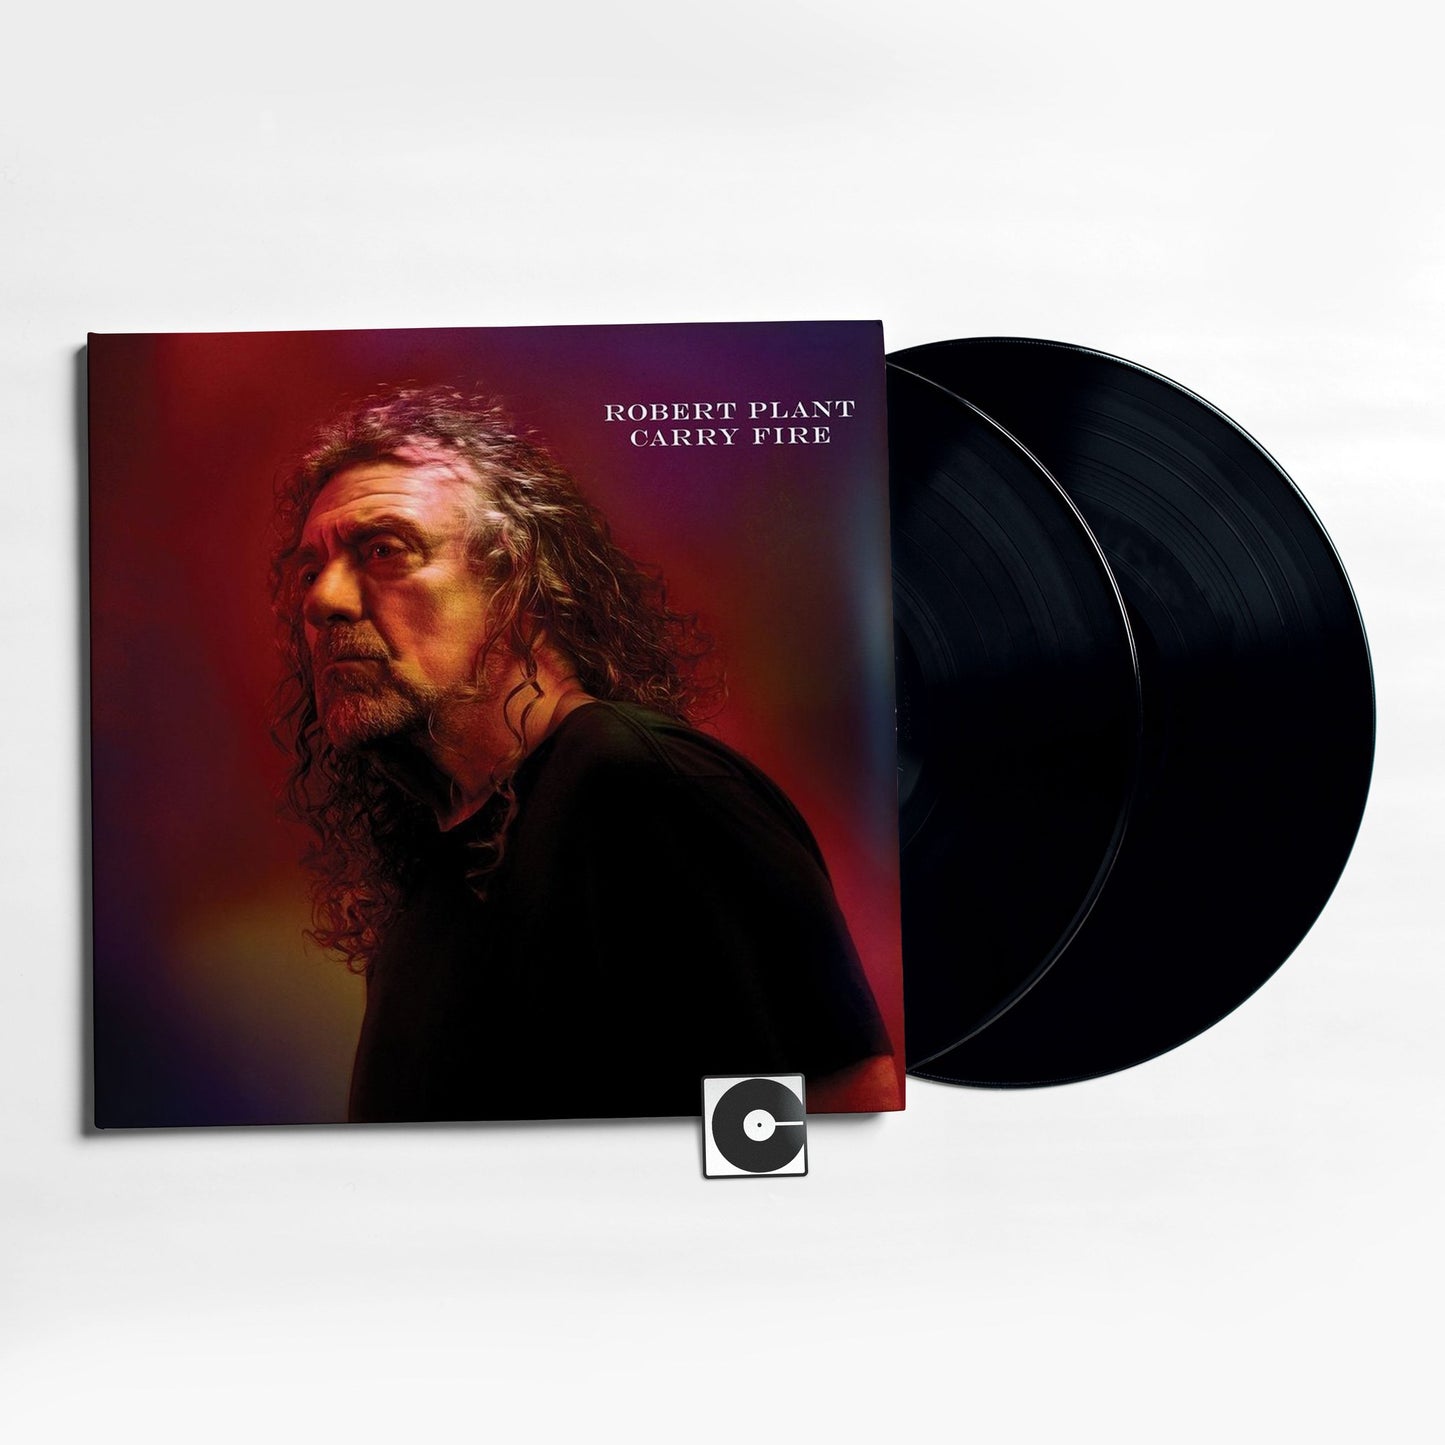 Robert Plant - "Carry Fire"